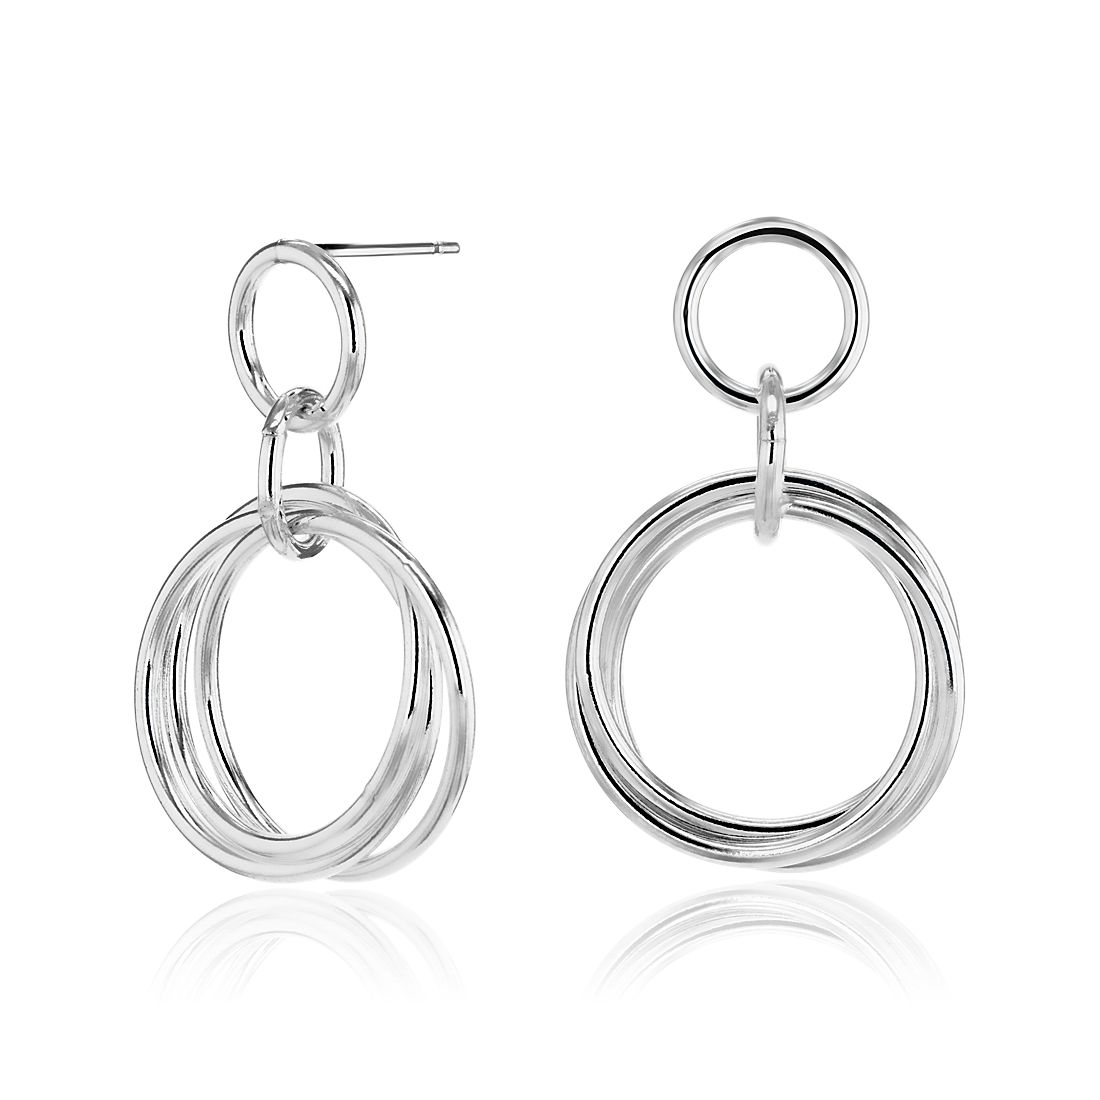 Rolling Ring Hoop Earrings in Sterling Silver